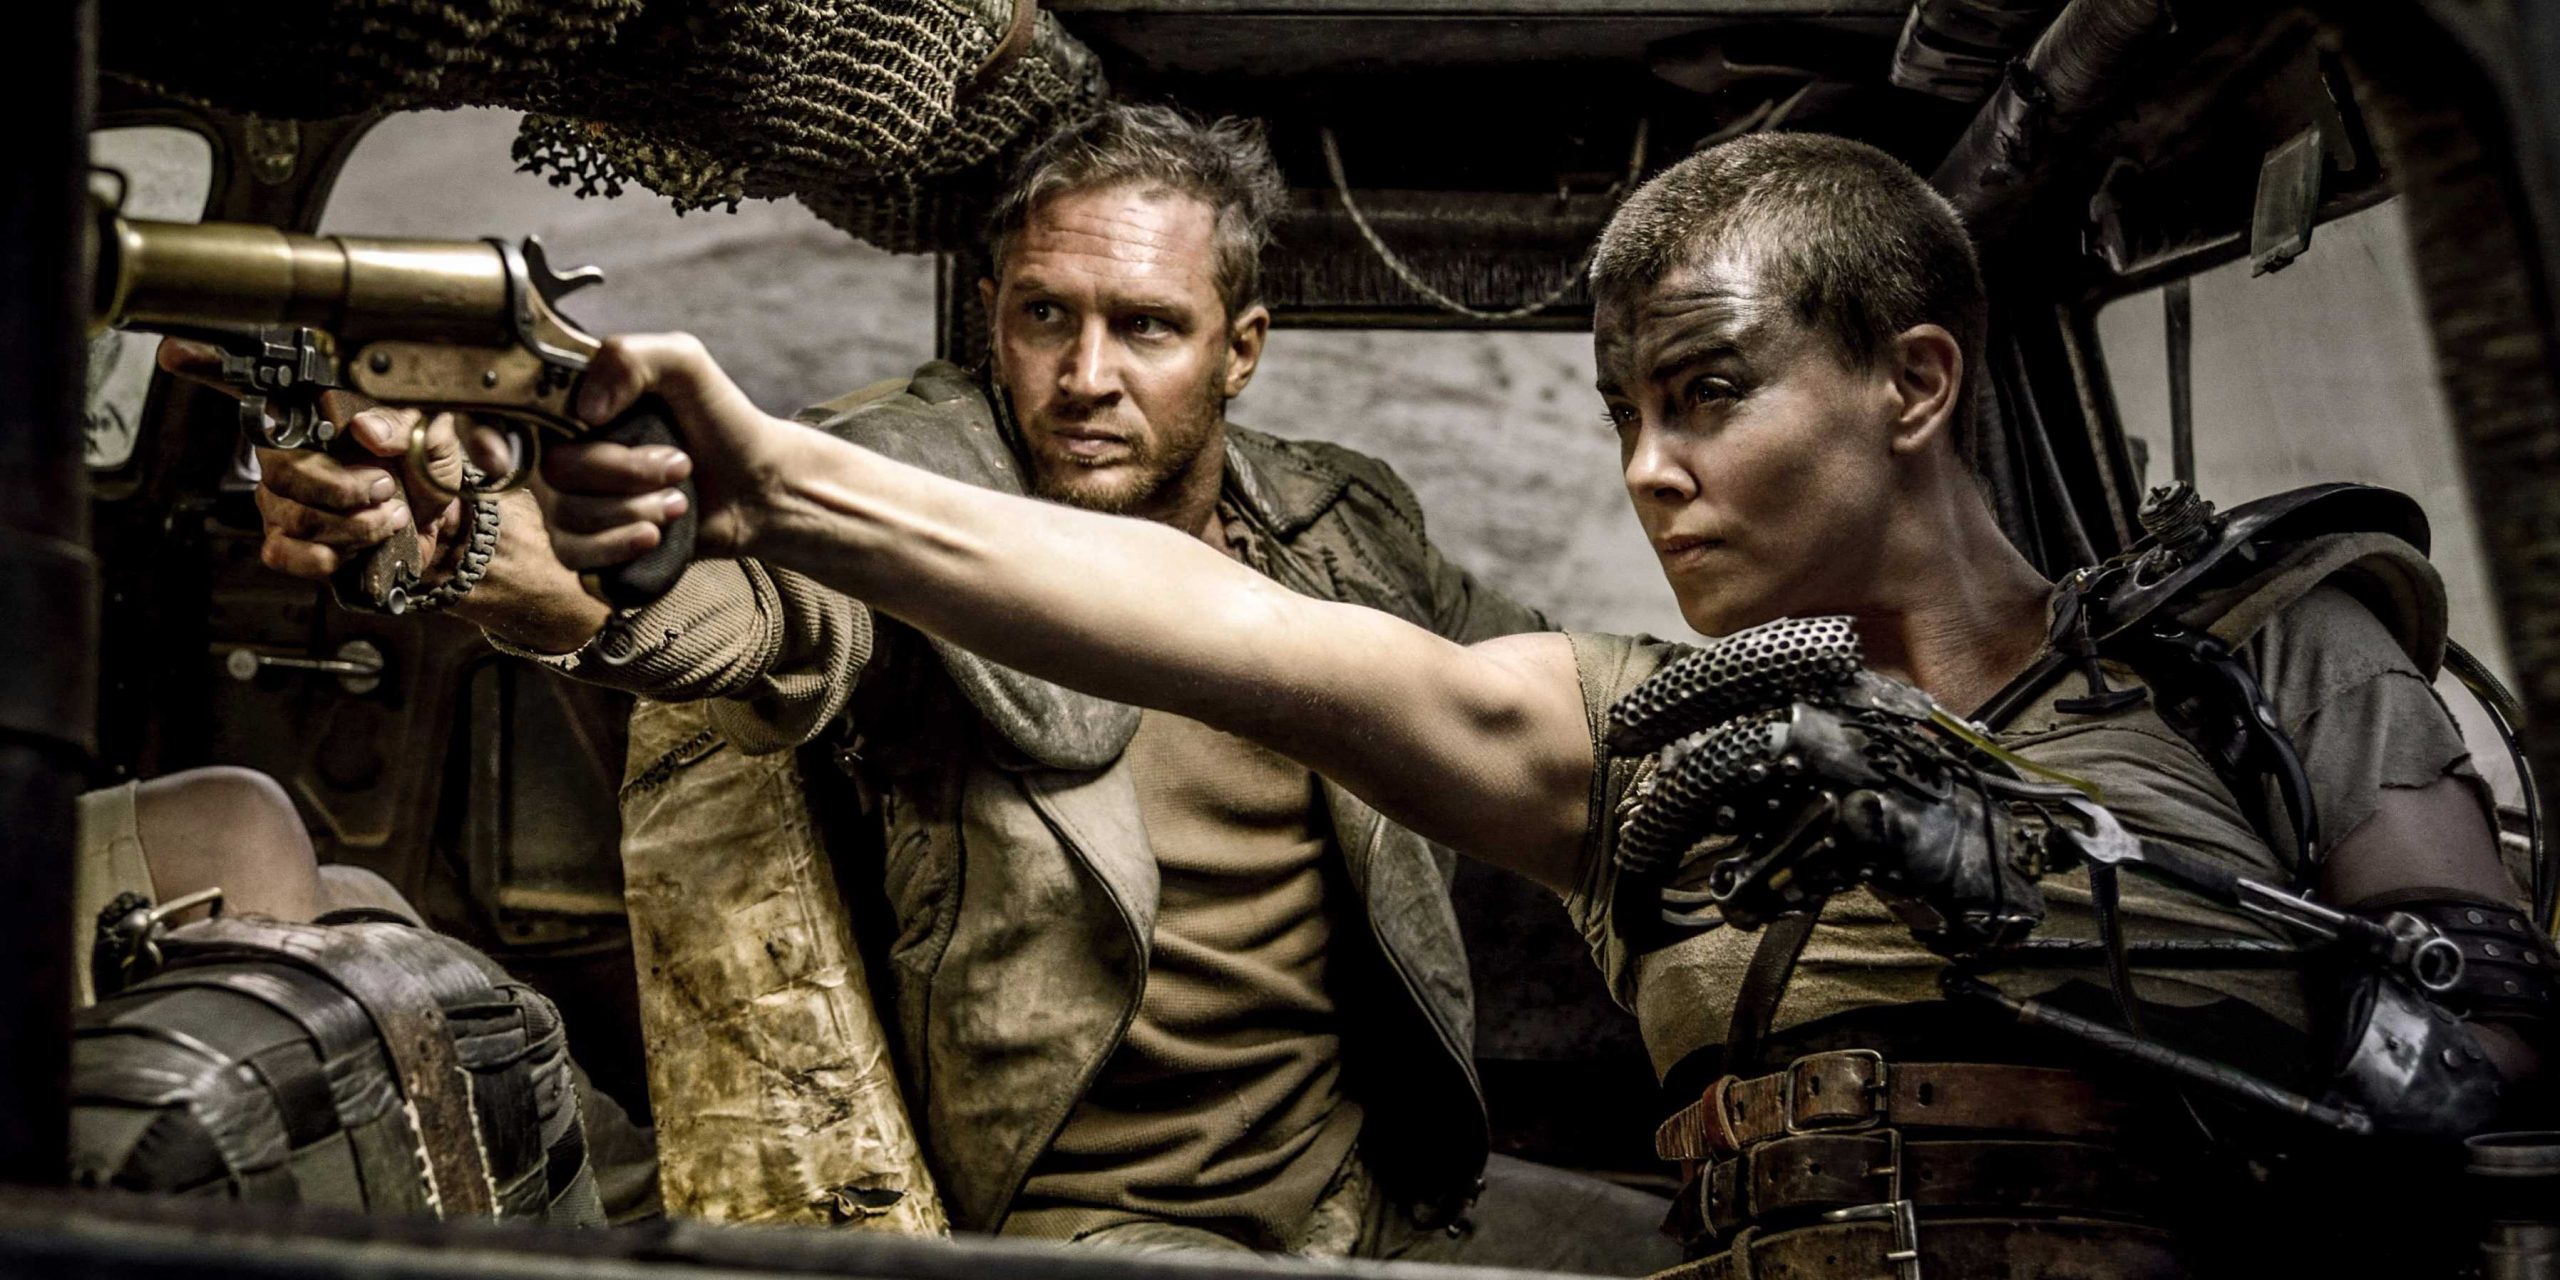 Chris Hemsworth Bakal Jadi Vilain di Prekuel Mad Max: Fury Road